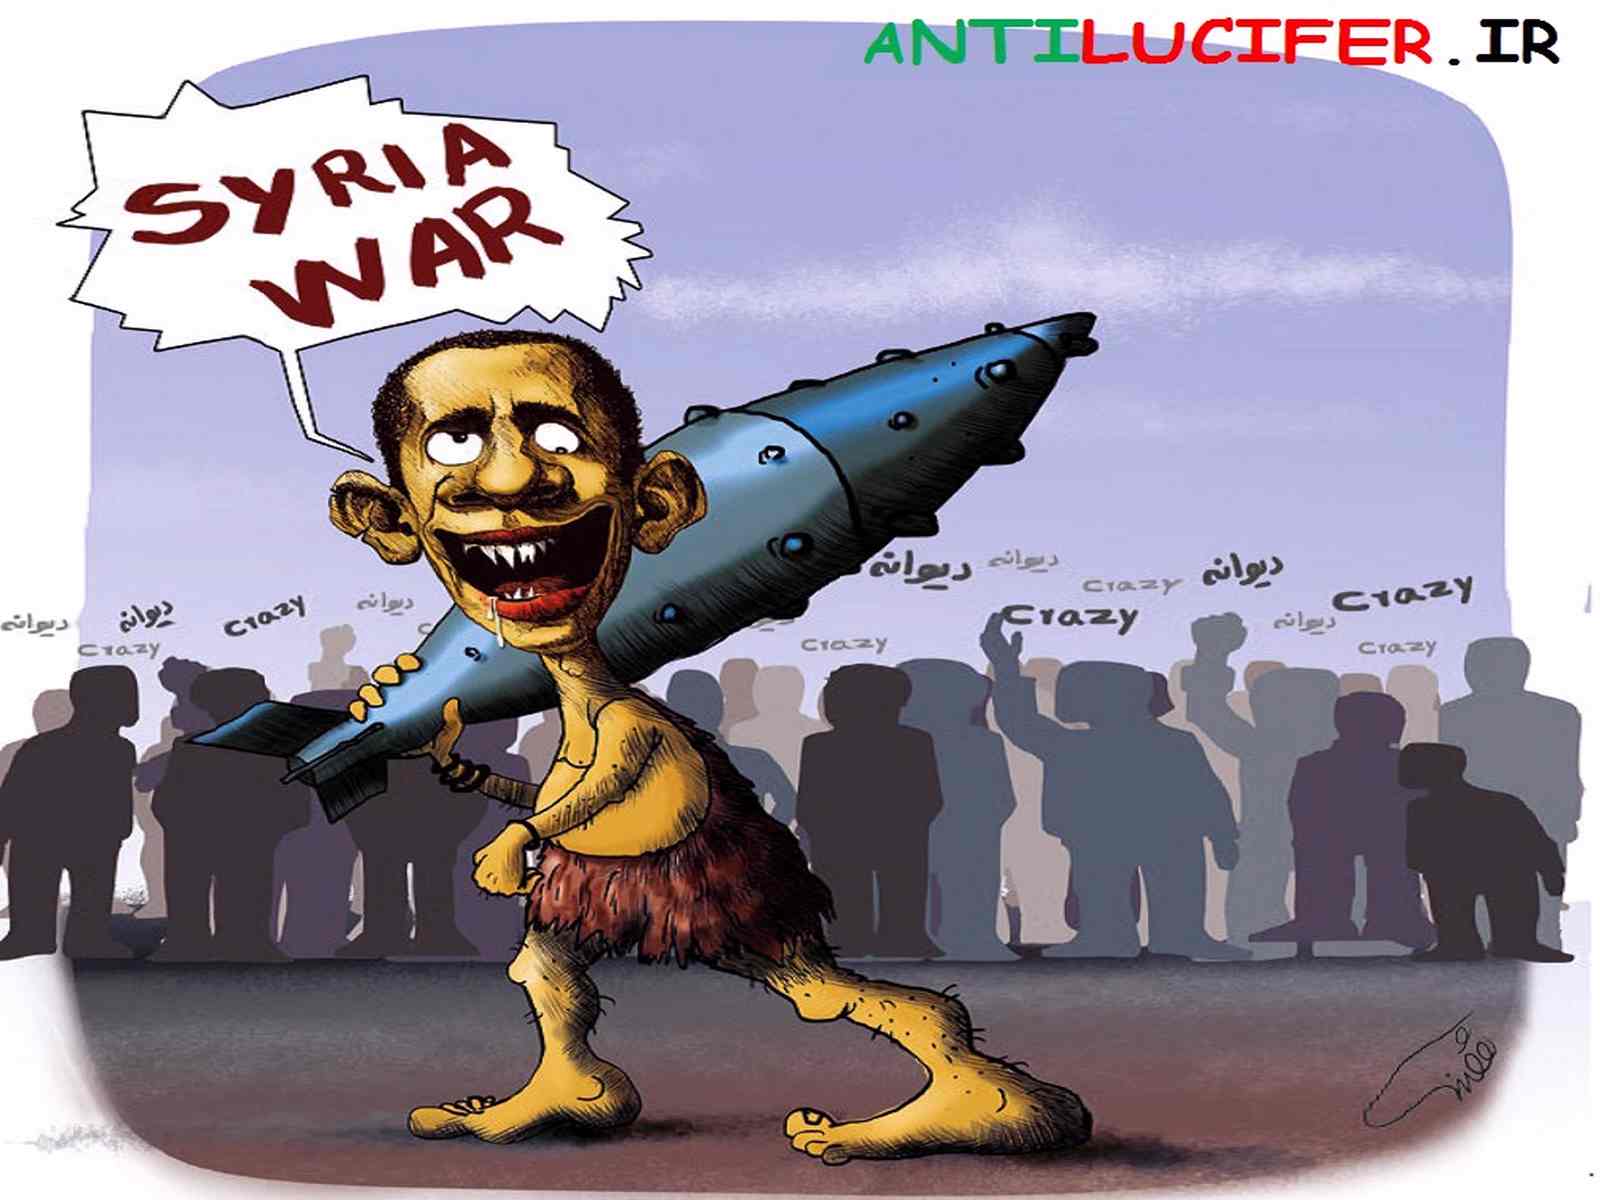 کاریکاتور با موضوع سوریه